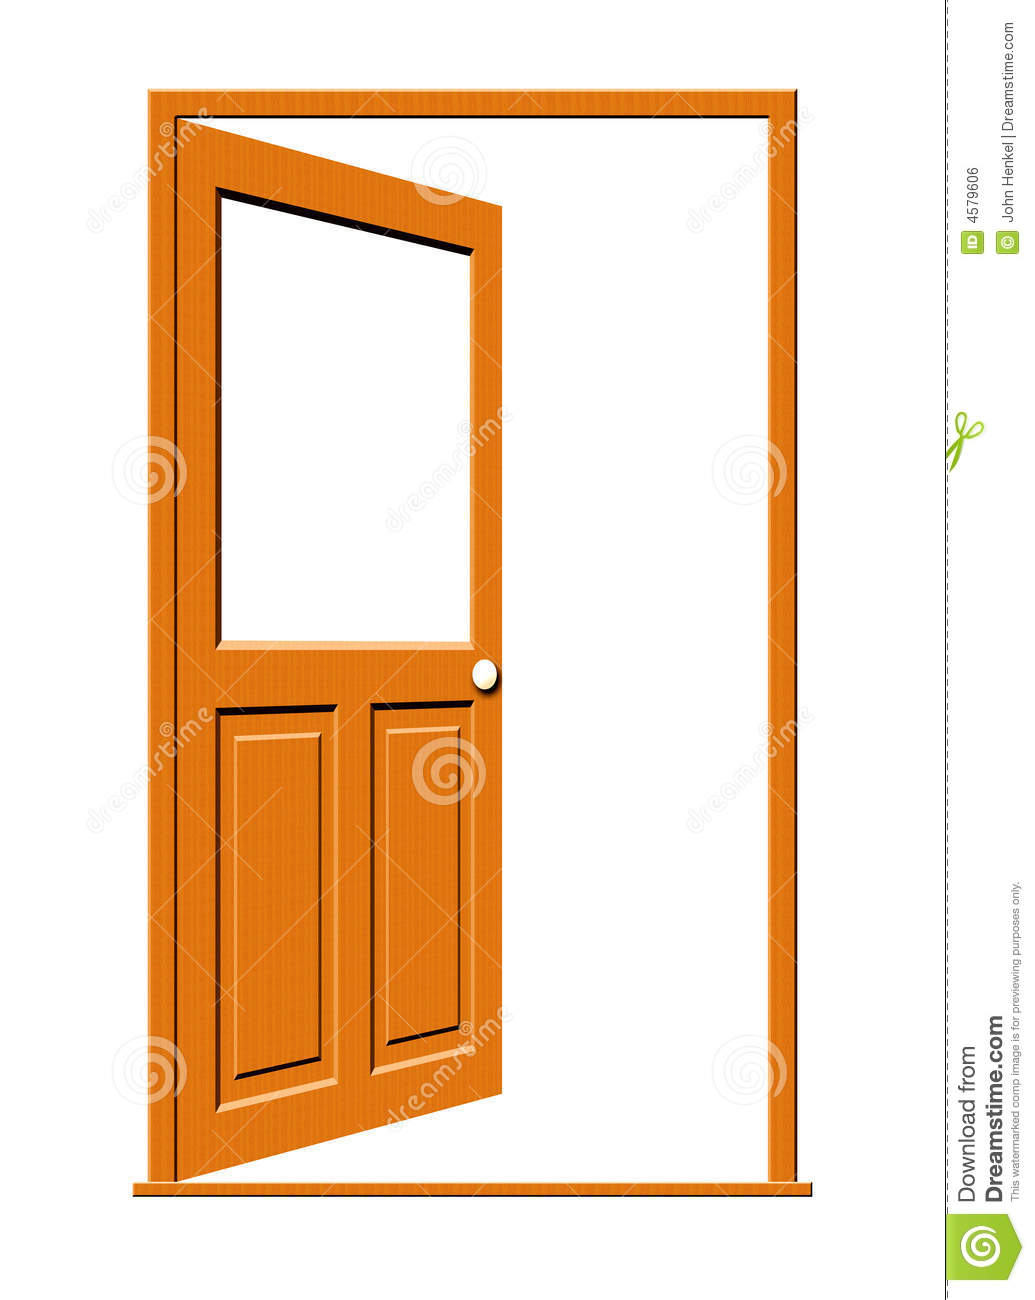 open door clipart - Open Door Clip Art